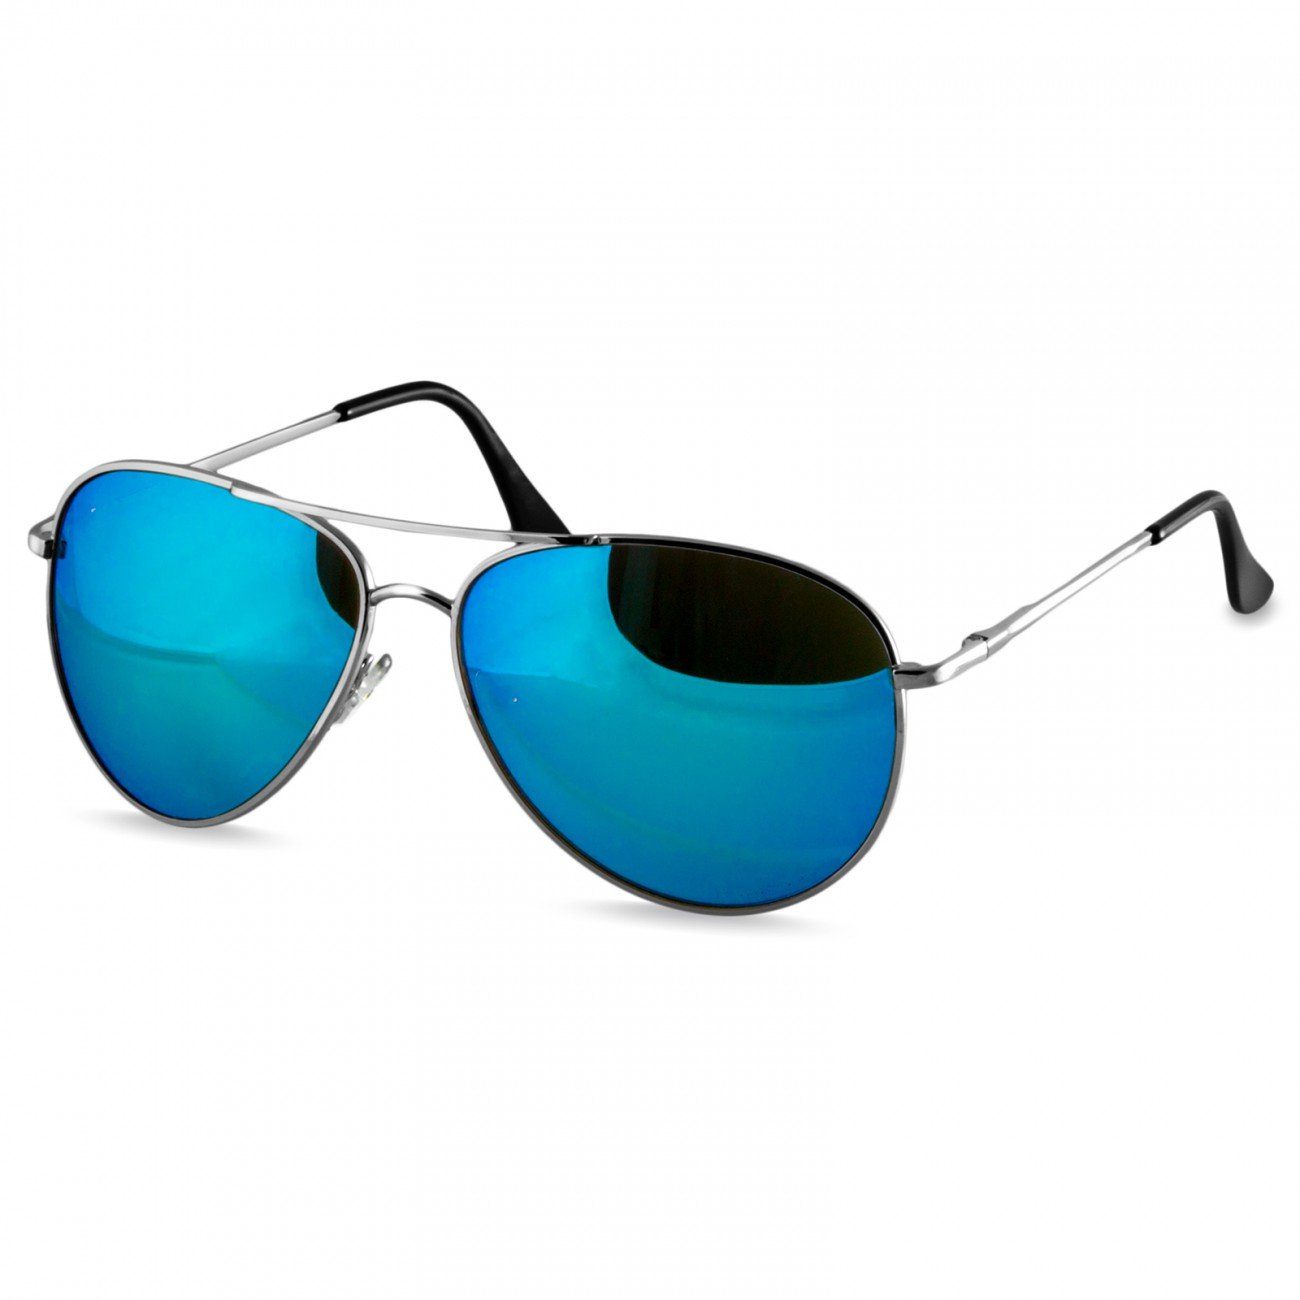 Caspar Sonnenbrille SG013 klassische Unisex Retro Pilotenbrille silber / hellblau verspiegelt